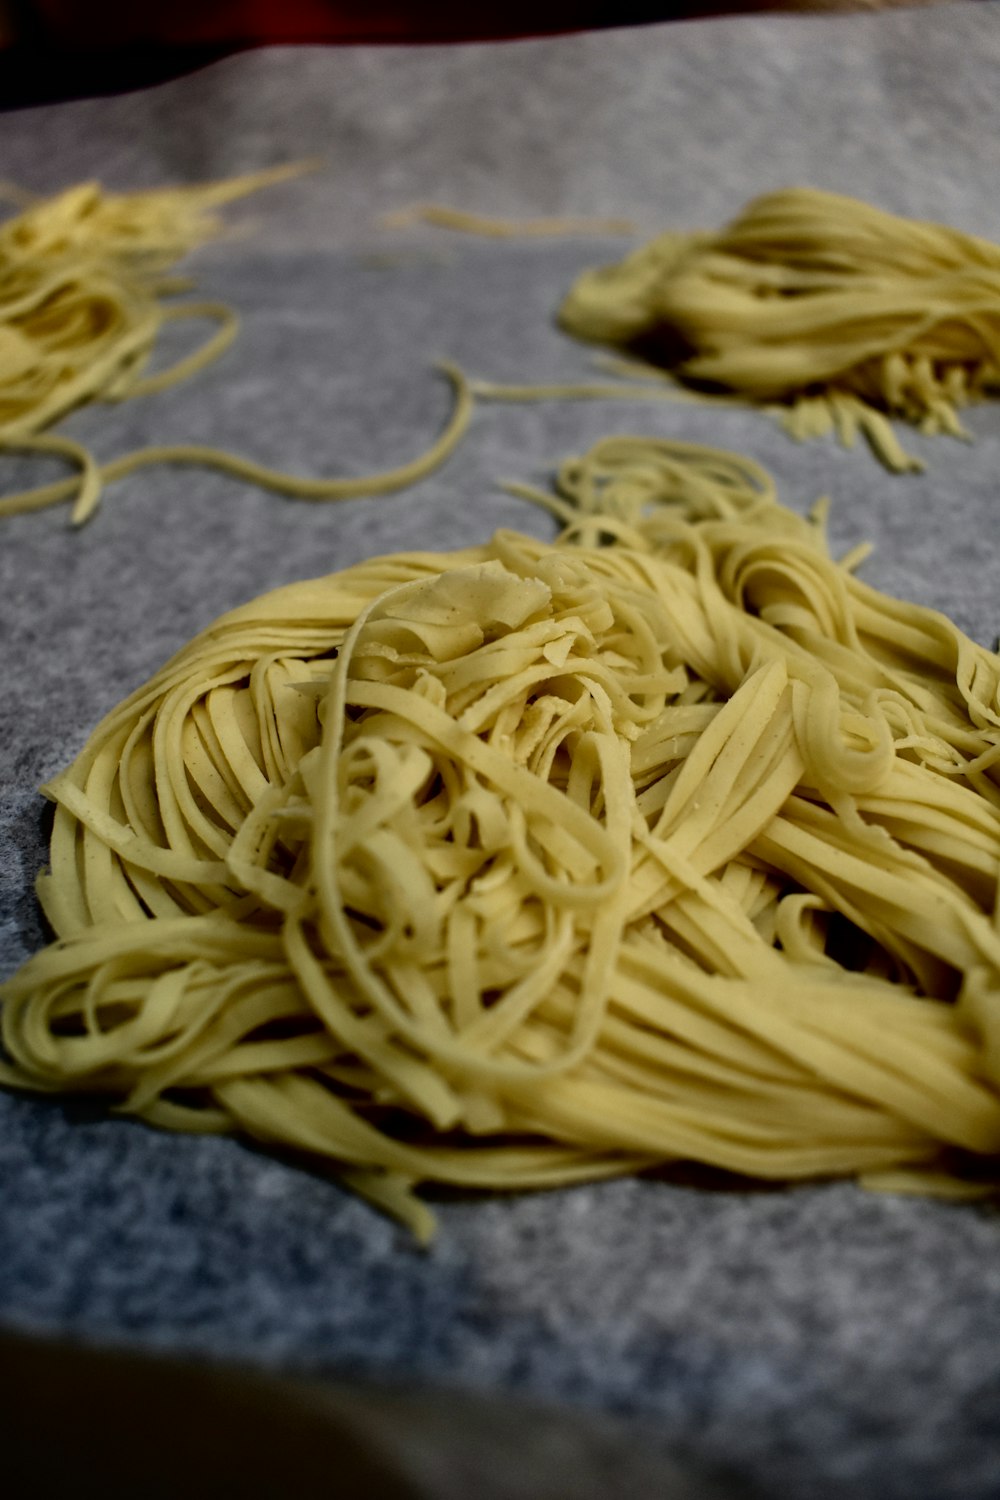 yellow pasta on gray textile